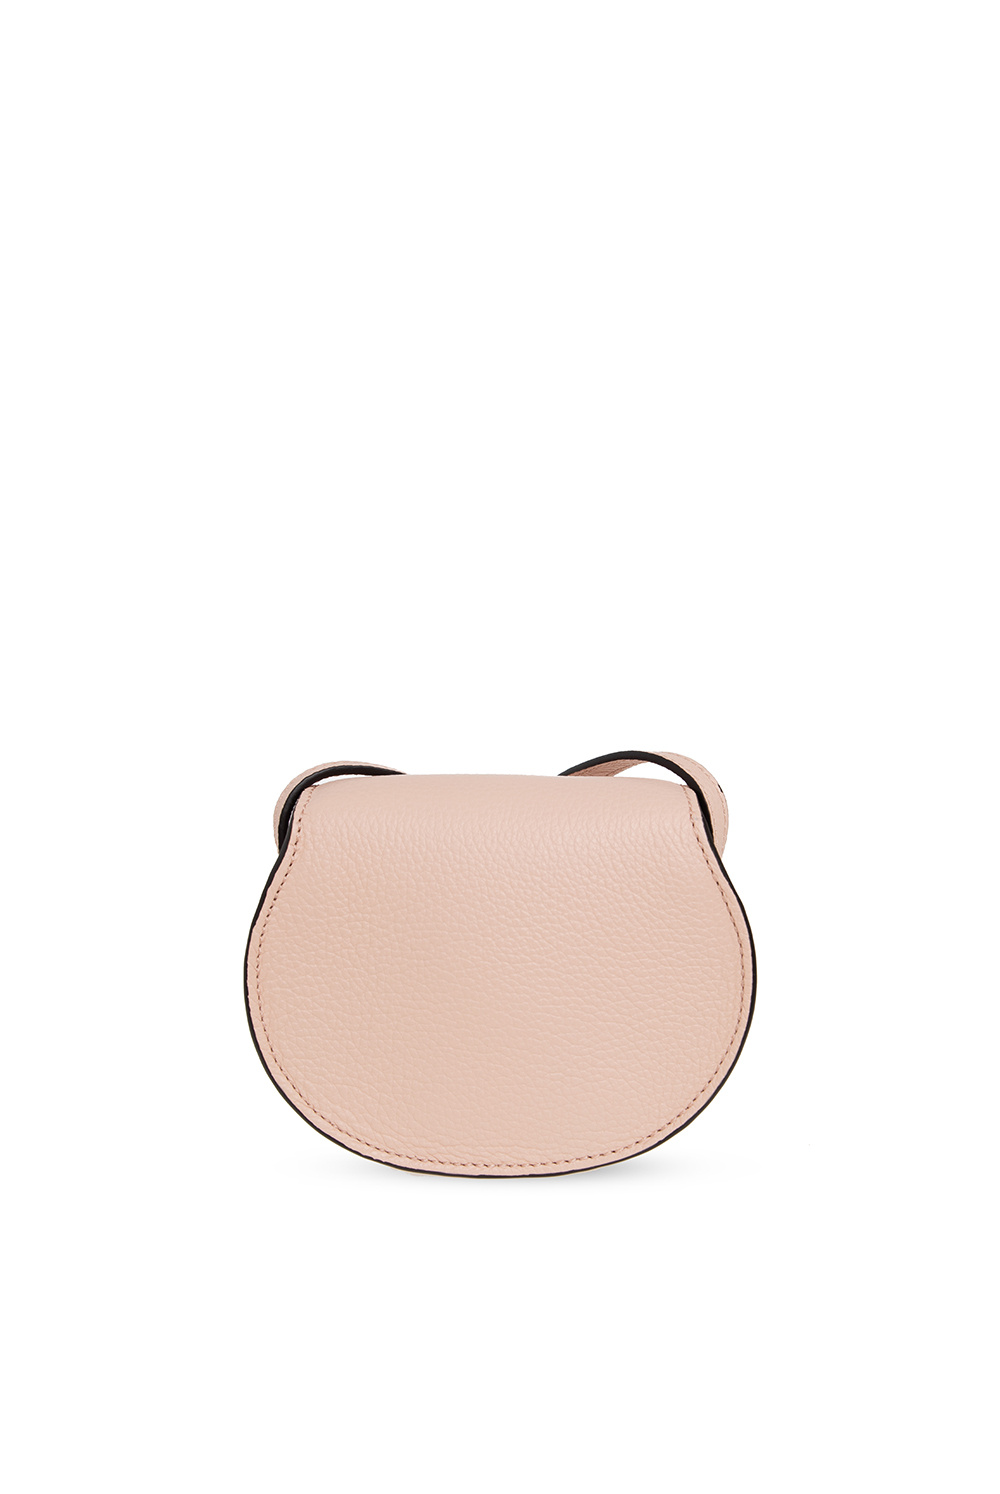 Chloé Marcie Textured-leather Shoulder Bag Pink